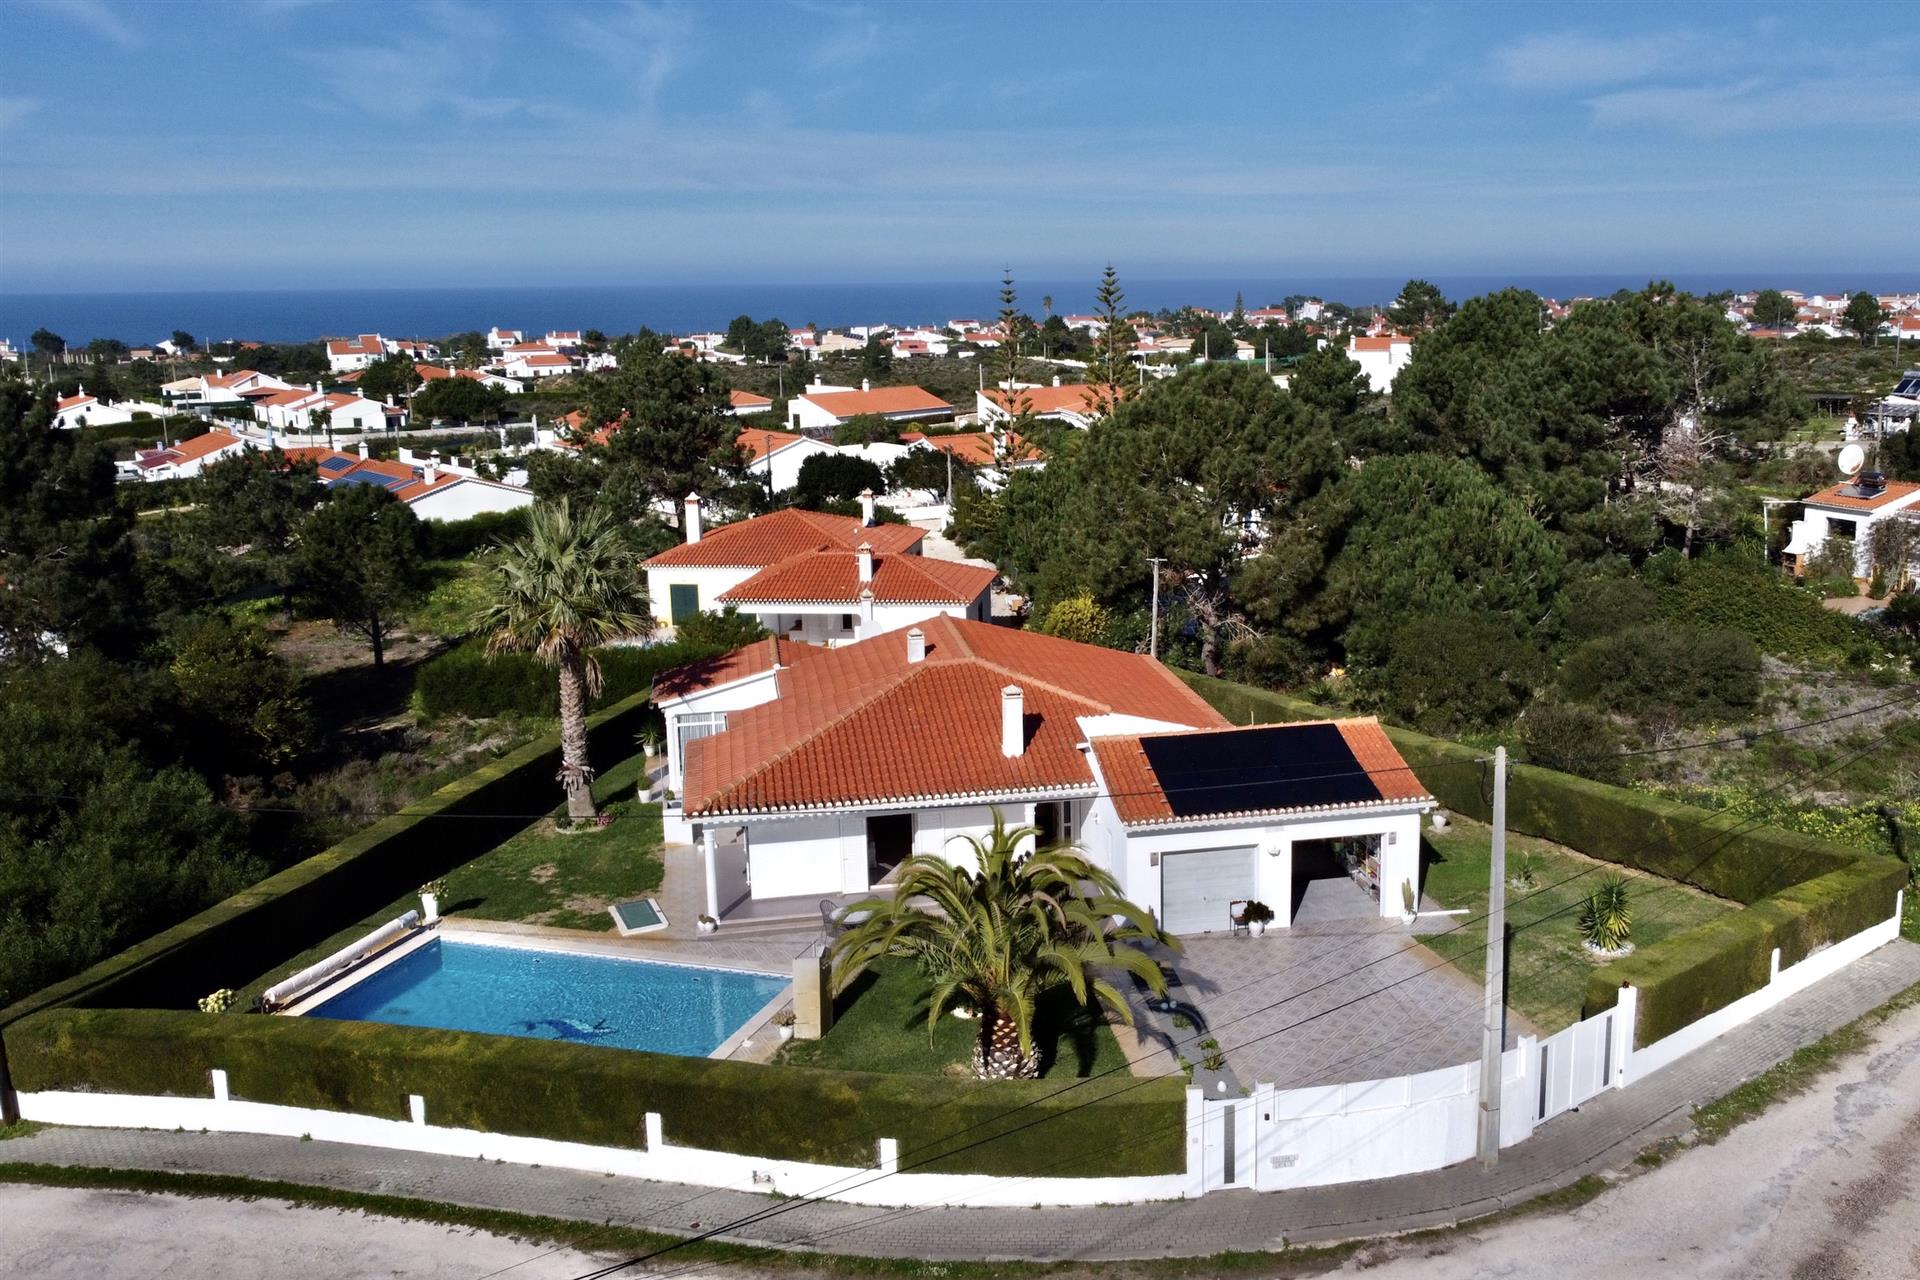 Attractive 3 bed villa with pool in Vale da Telha